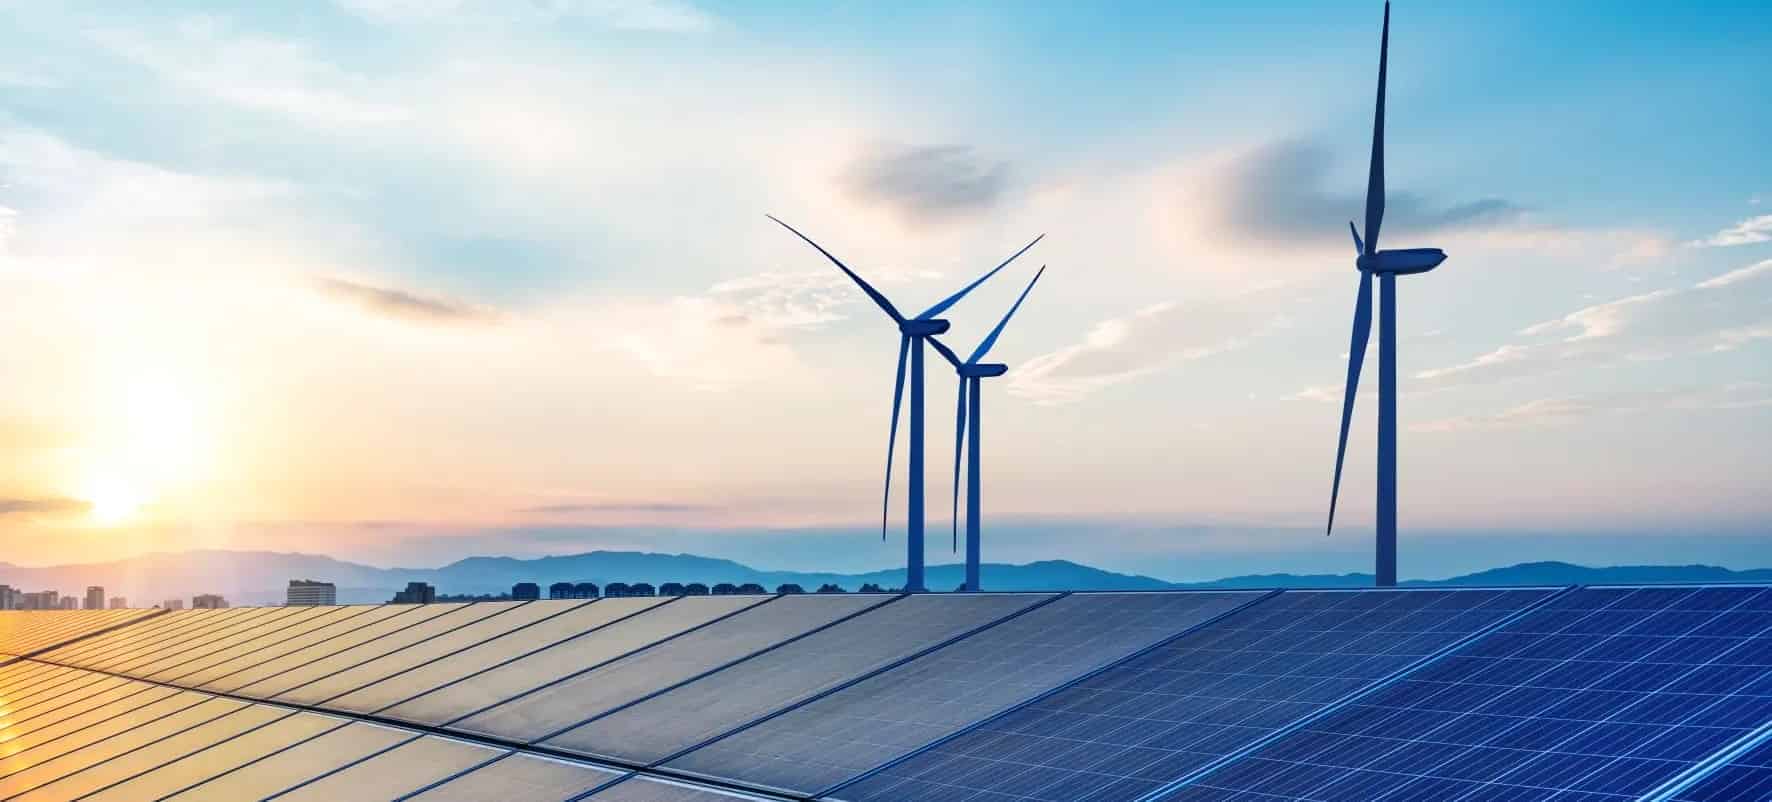 الطاقة المتجددة بصدد طرح المزيد من مشروعات الطاقة الشمسية و الرياح